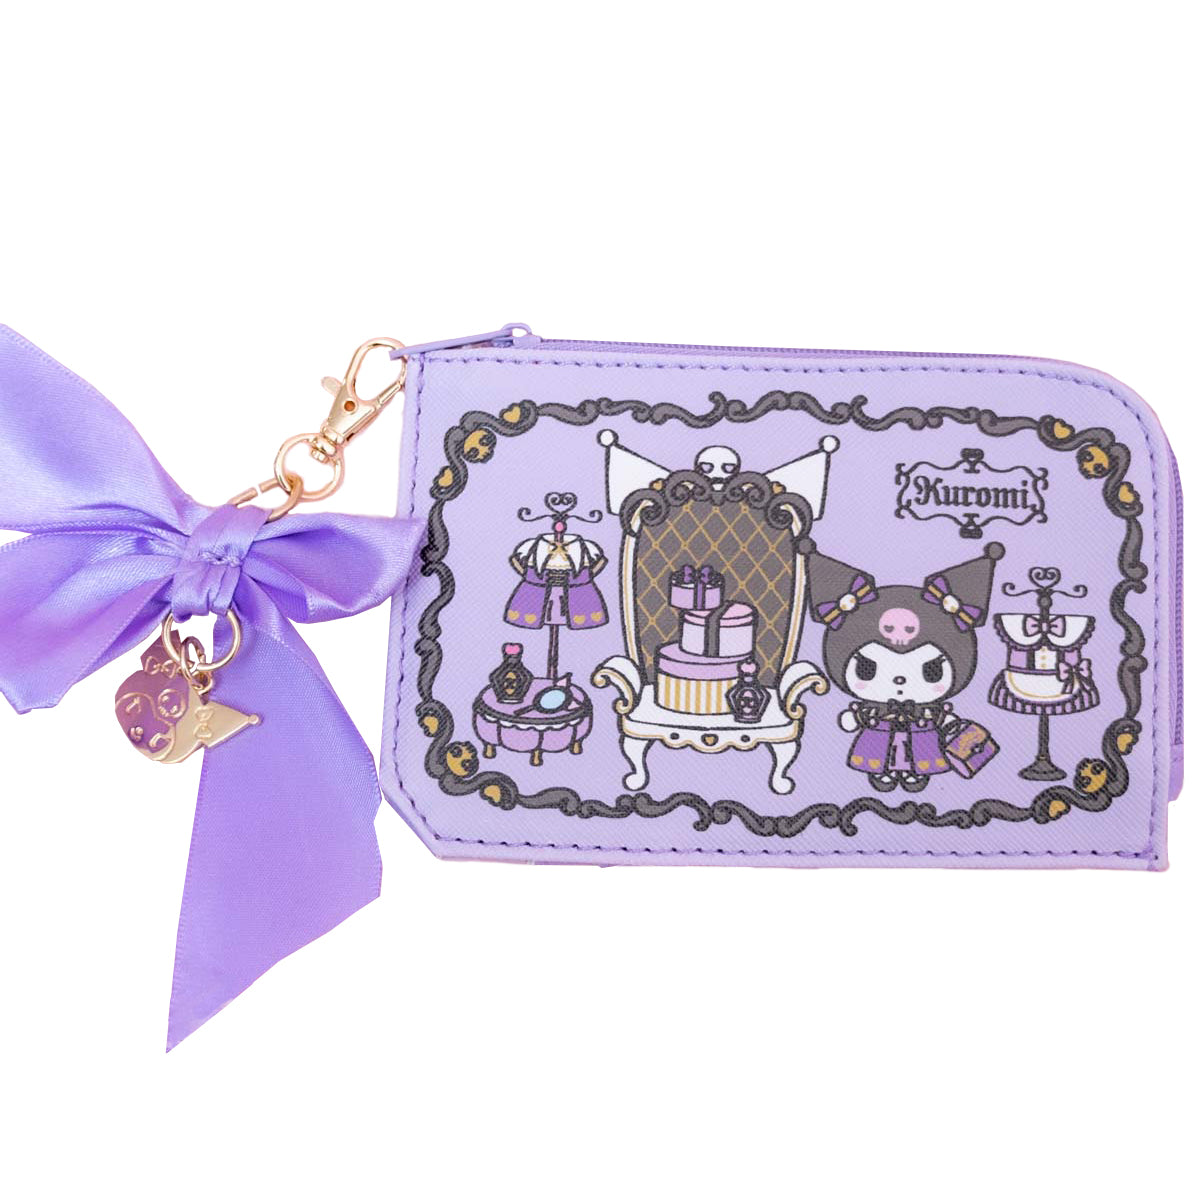 Kuromi Compact Card Wallet (Royal Princess Series) Bags Global Original   